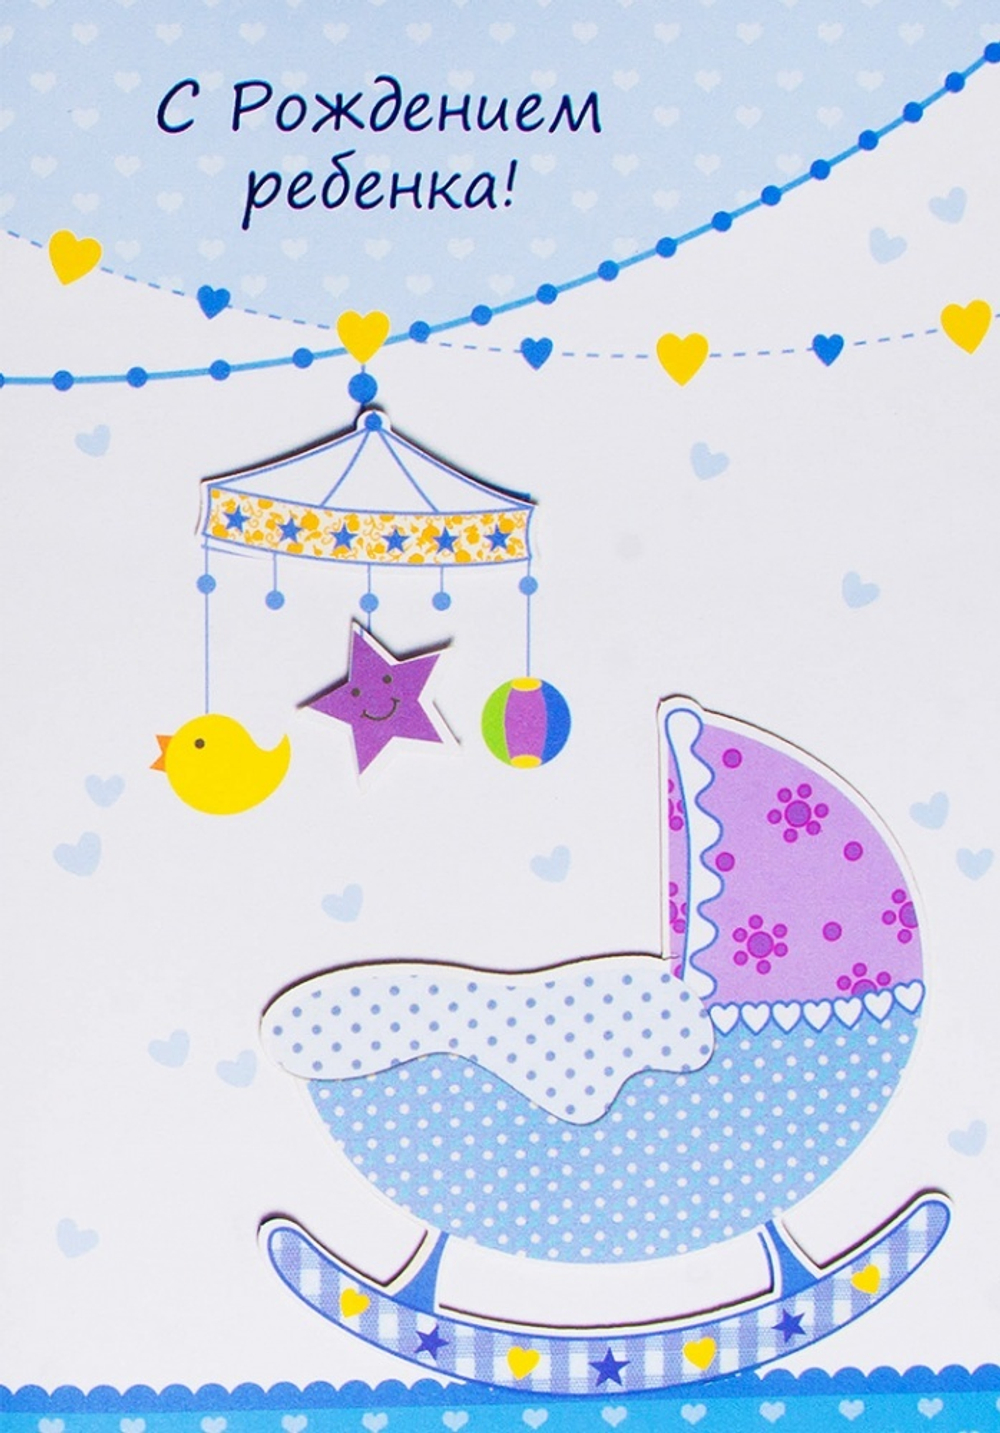 Ребенка с поздравительной открытки с дизайном бабочки